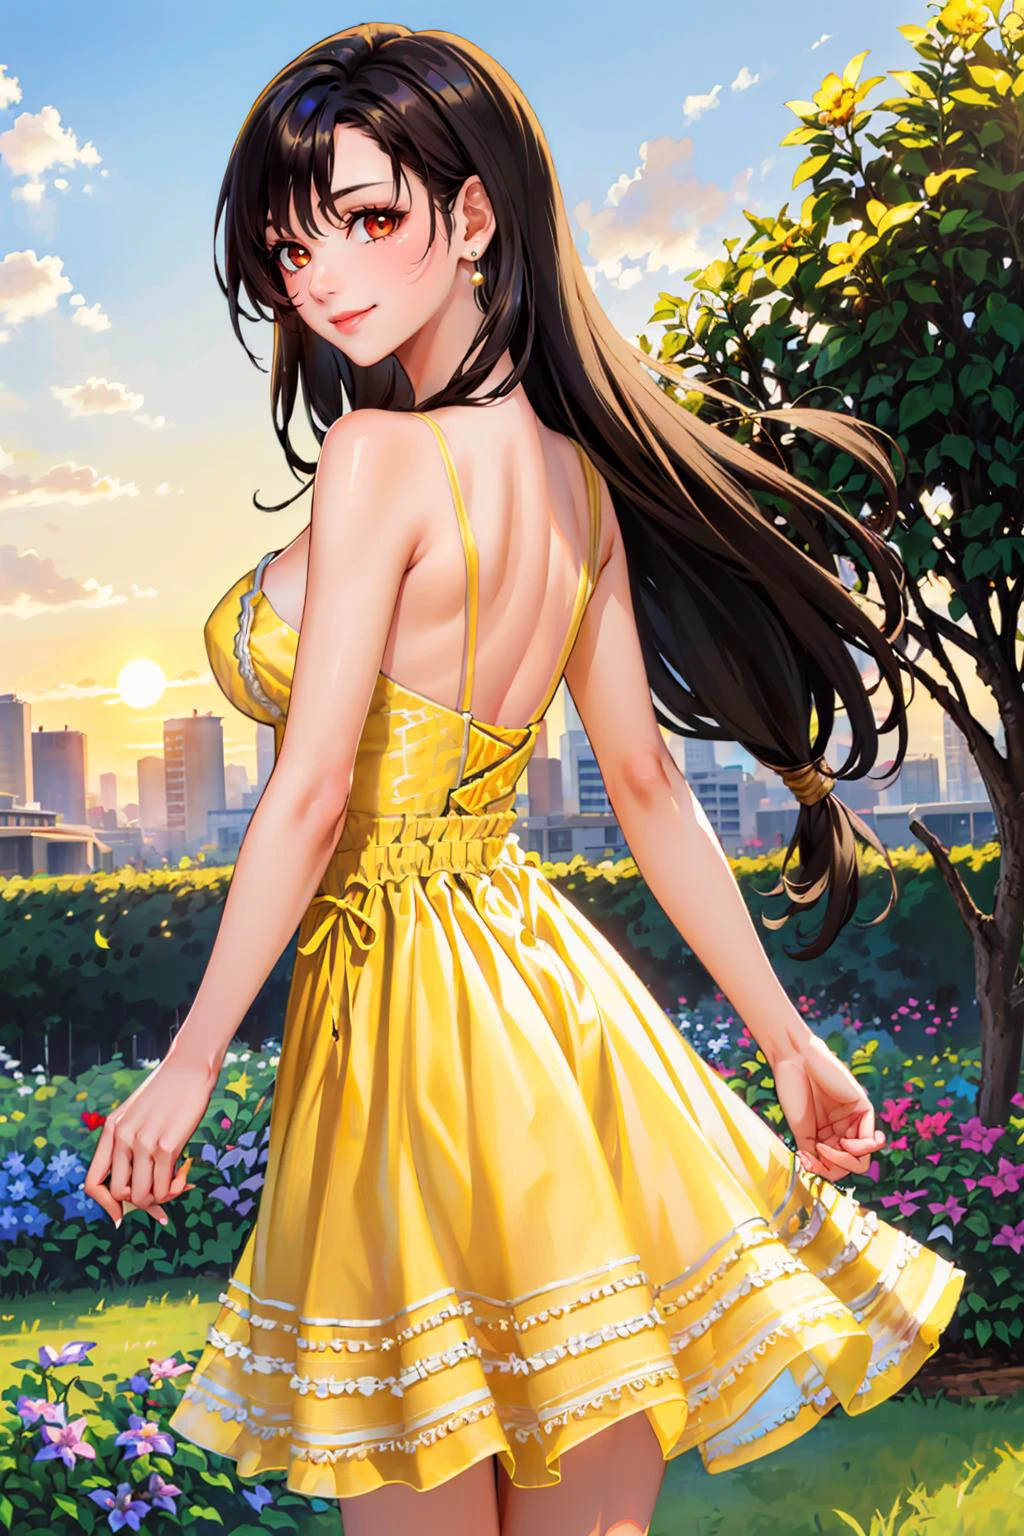 傑作, 最好的品質, 德法蒂法, 紅眼睛, 低扎长发, 耳環, (黃色背心裙:1.4), 從後面, 花園, 日落, 微笑, 大乳房, 城市景觀 edgYSD,woman wearing a 黃色背心裙